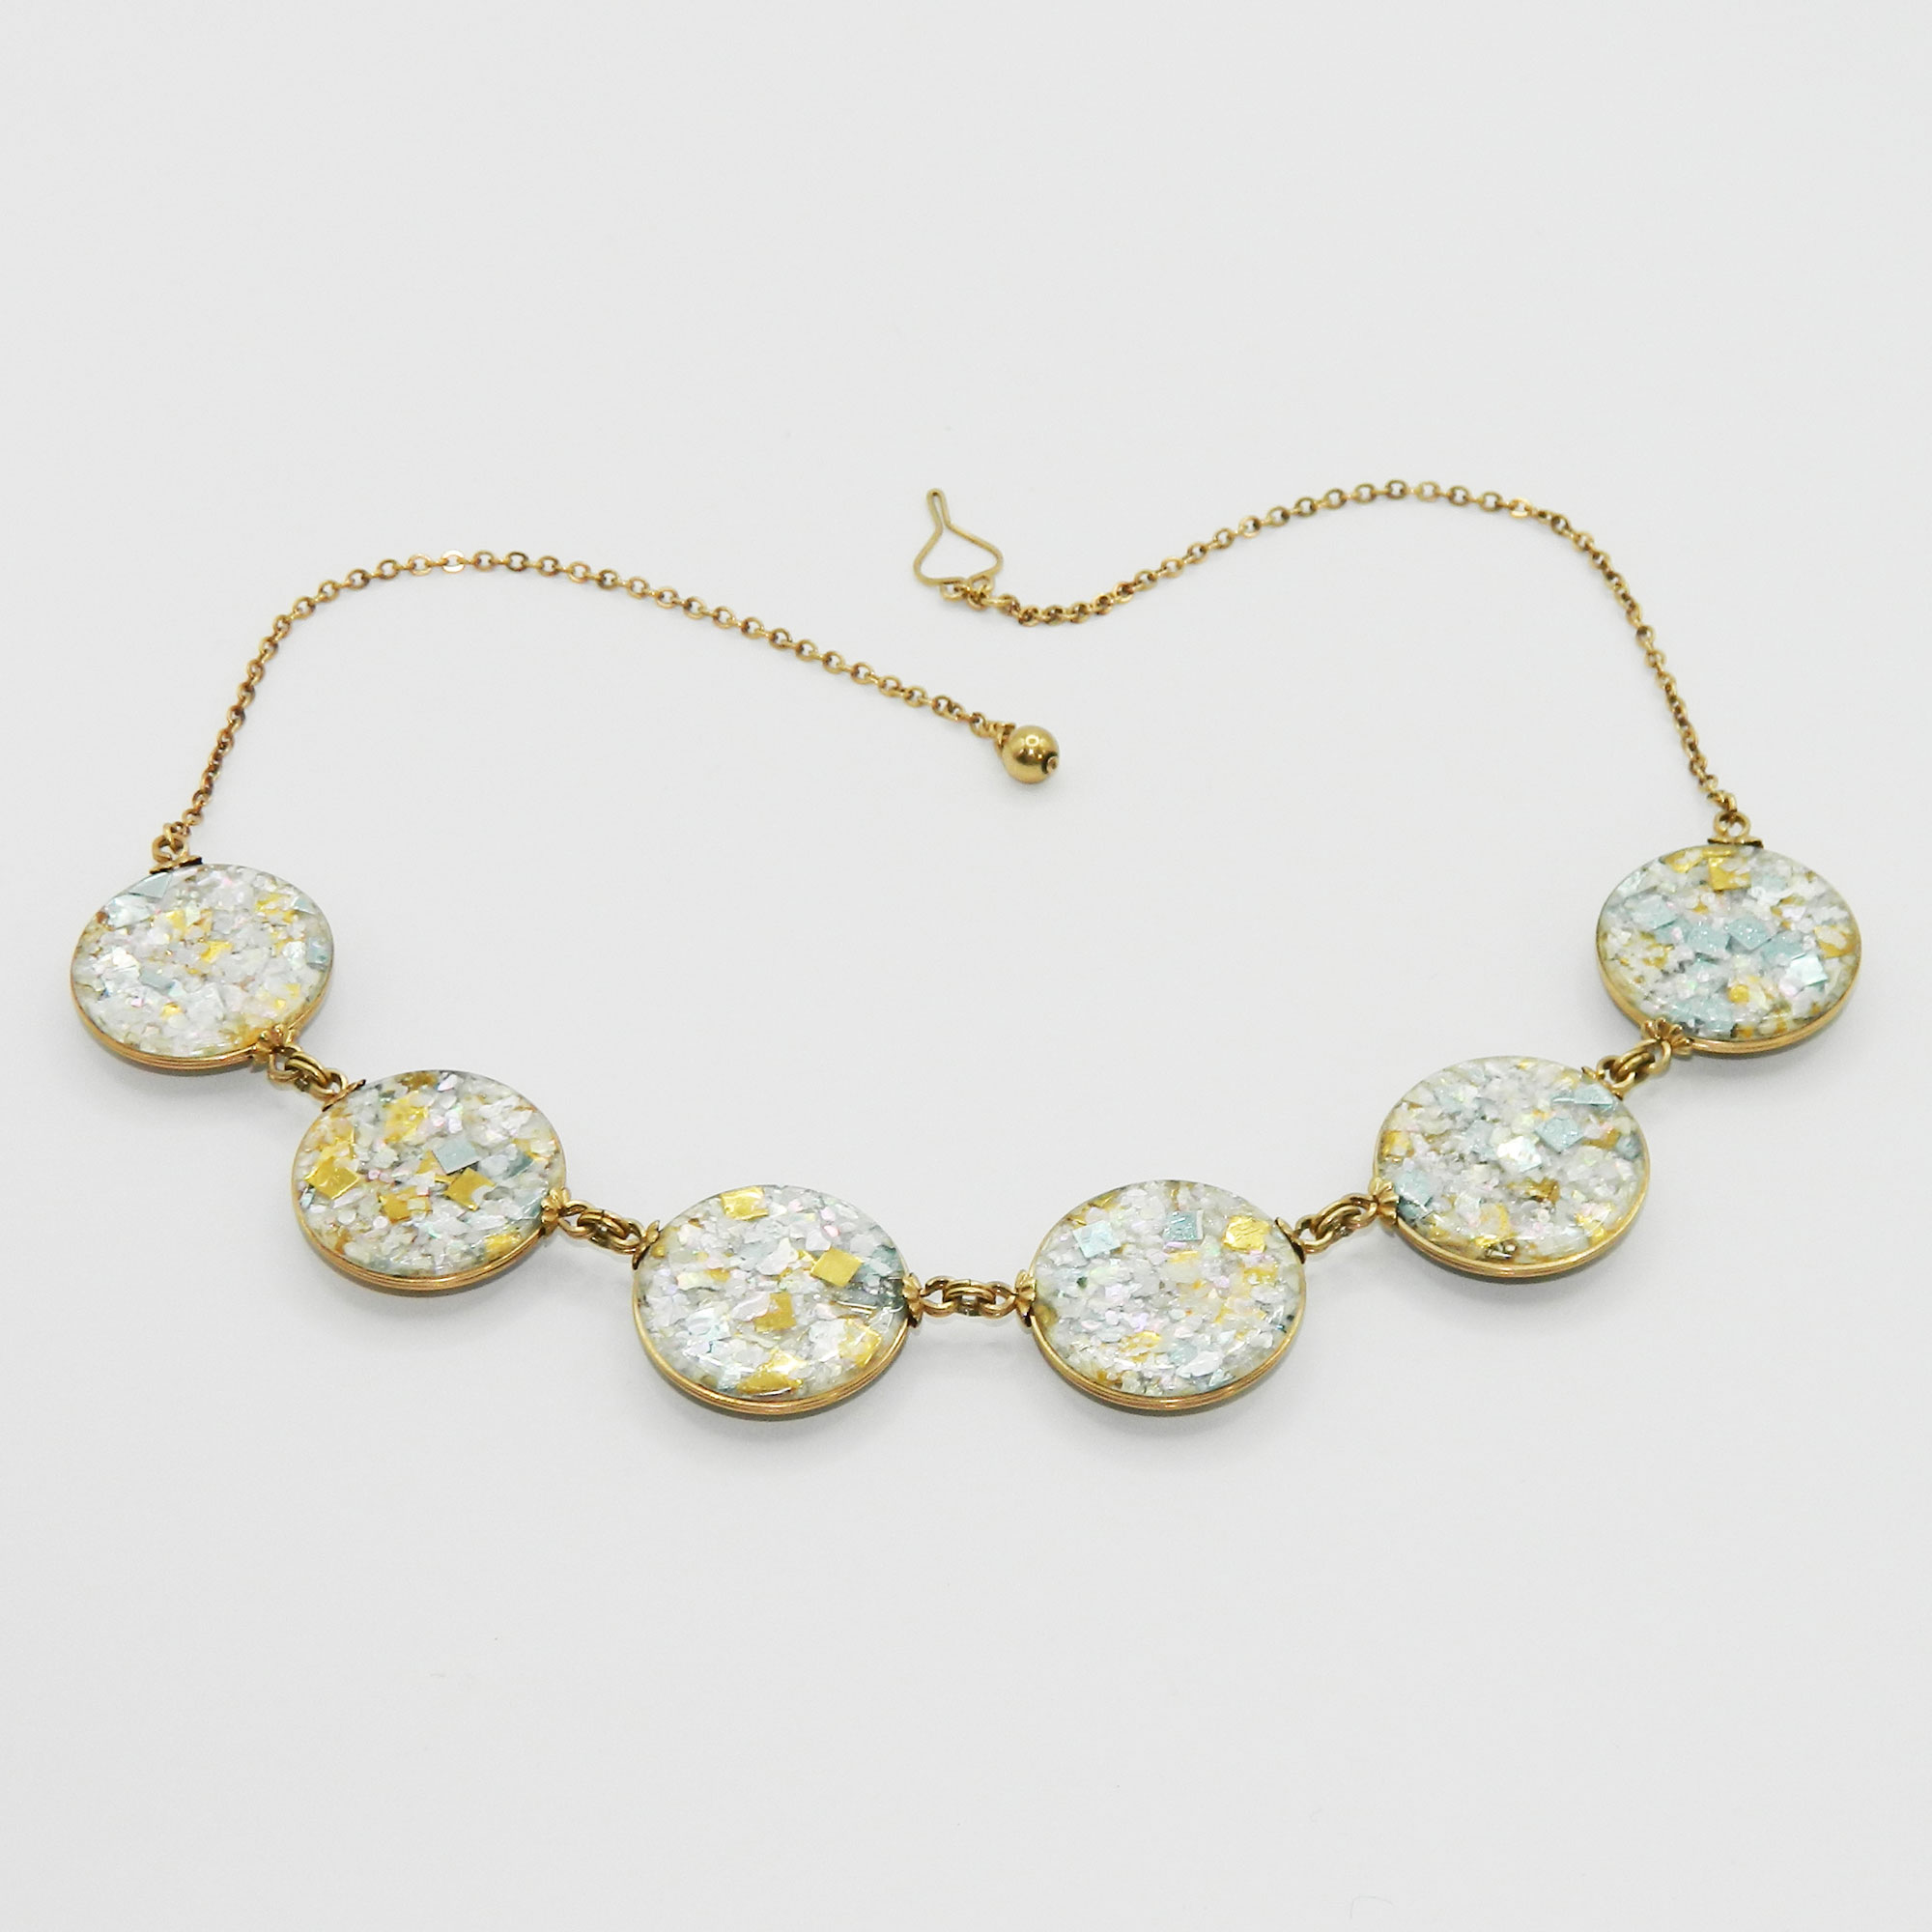 1950s Confetti Lucite Necklace